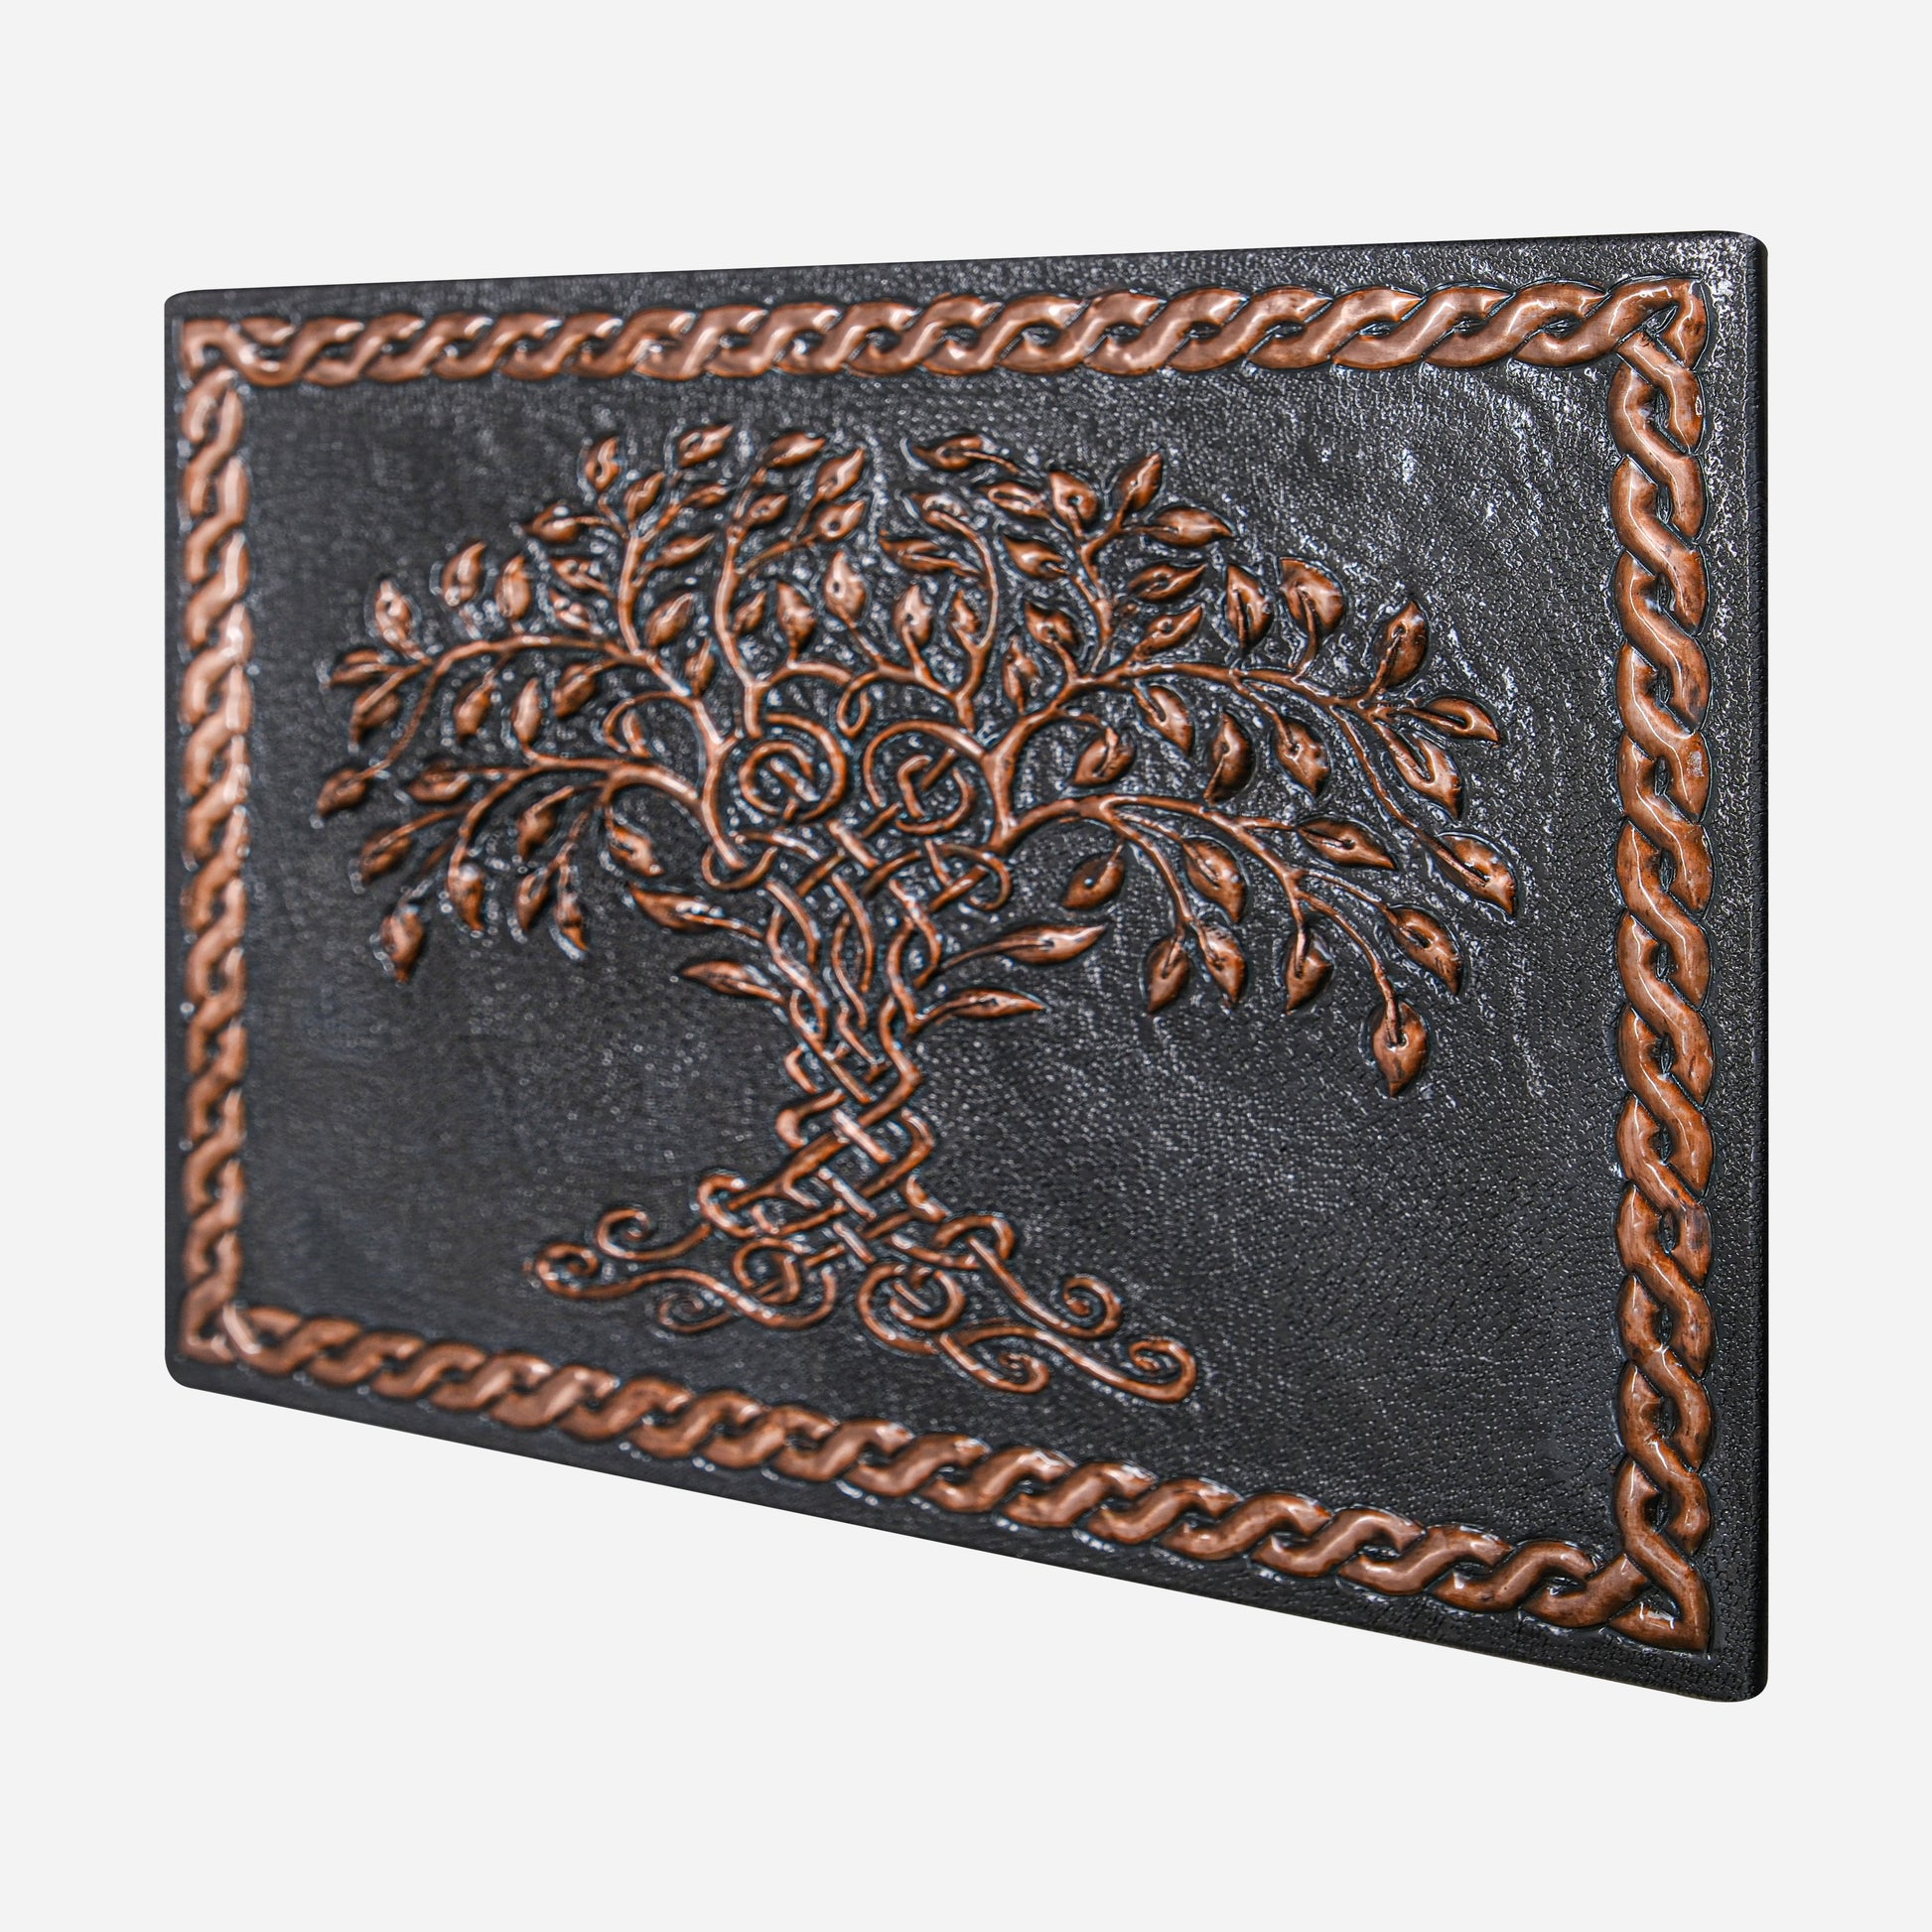 Copper Backsplash (Tree of Life with Celtic Border, Black&Copper Color)